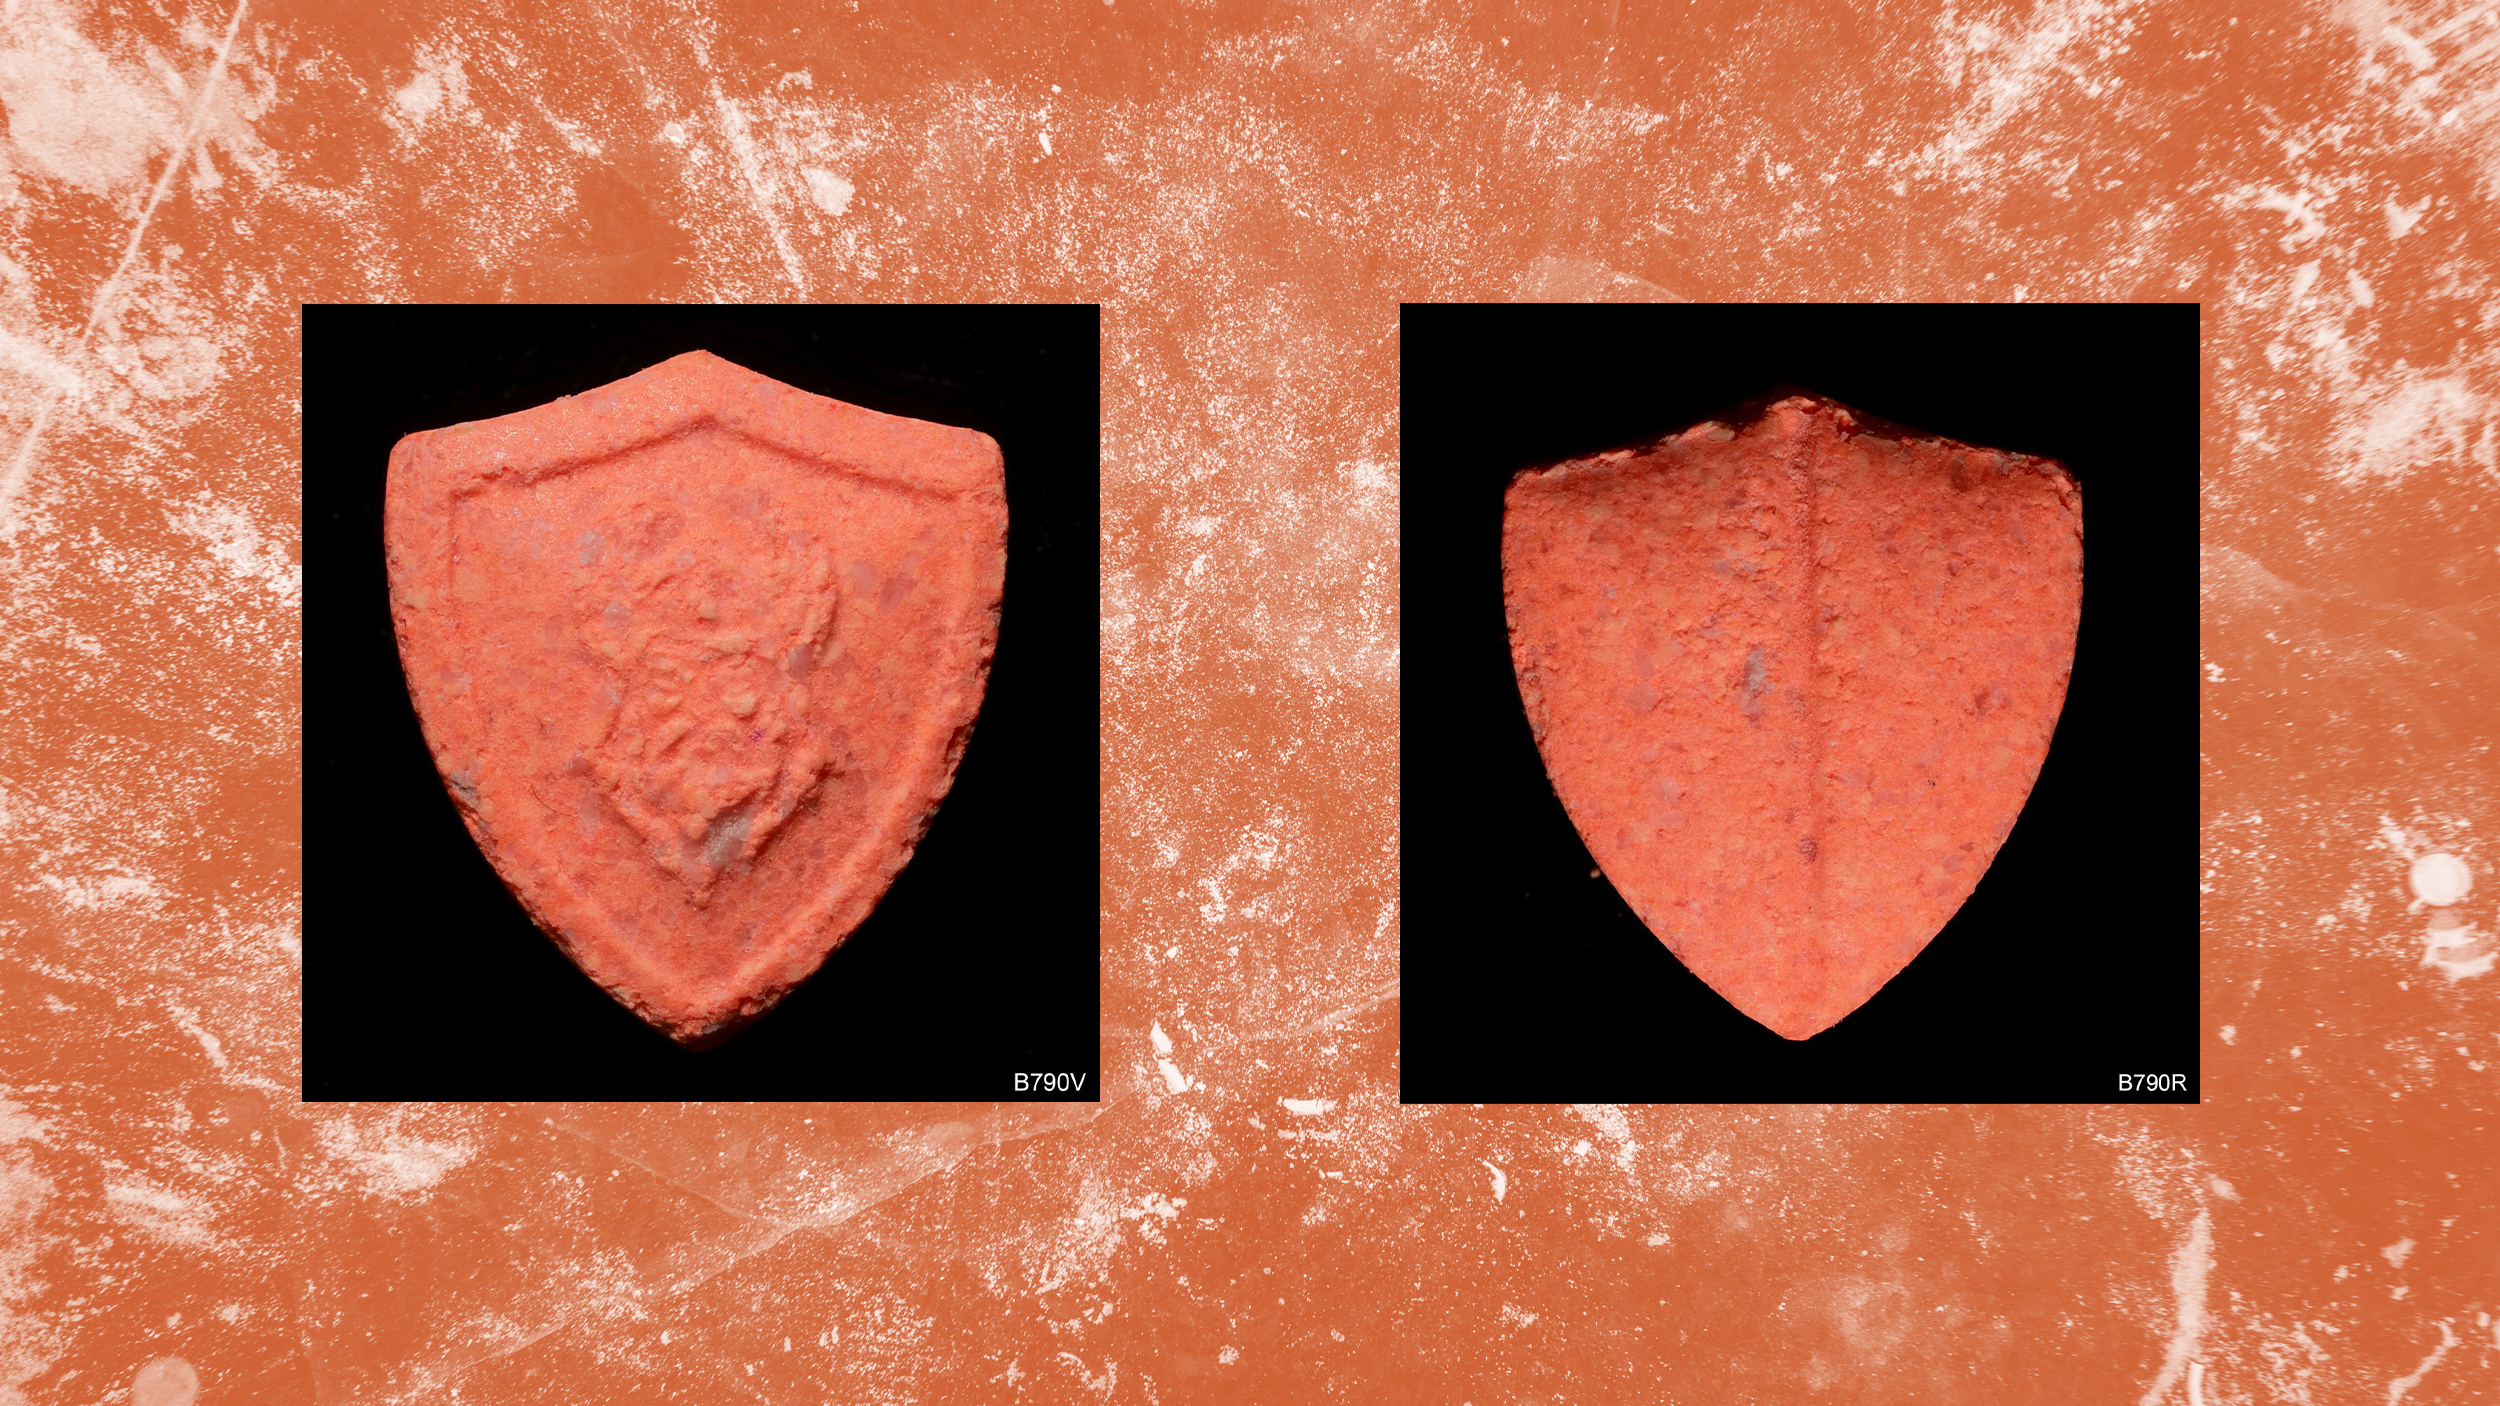 Eine orange Pille mit Wikinger-Logo auf orangem Hintergrund